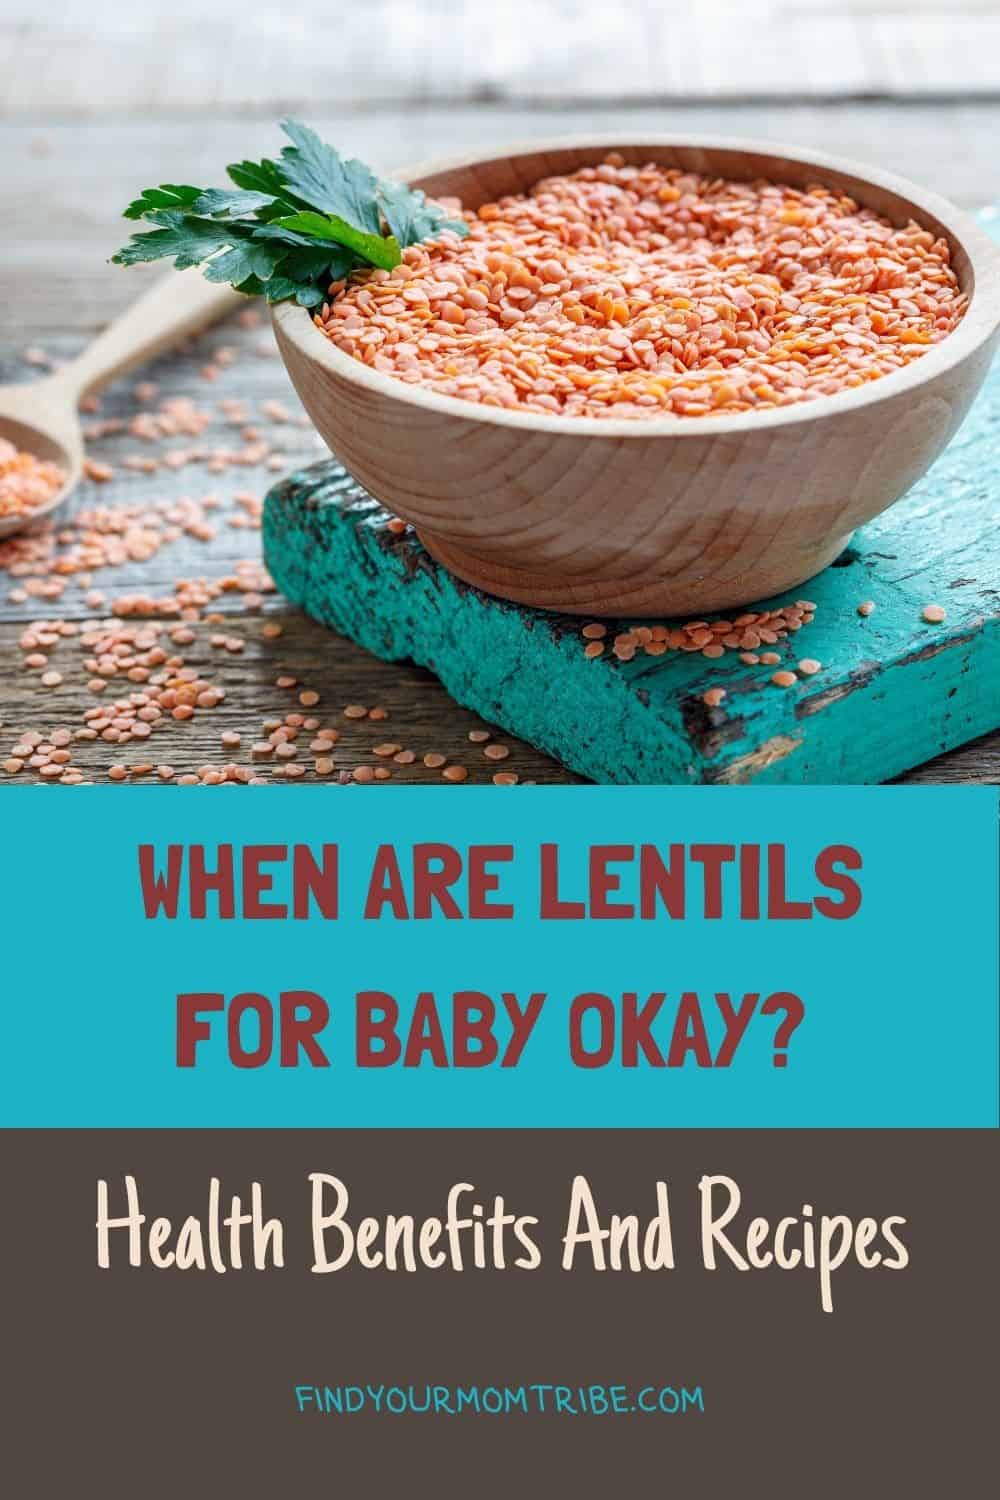 Pinterest lentils for baby 